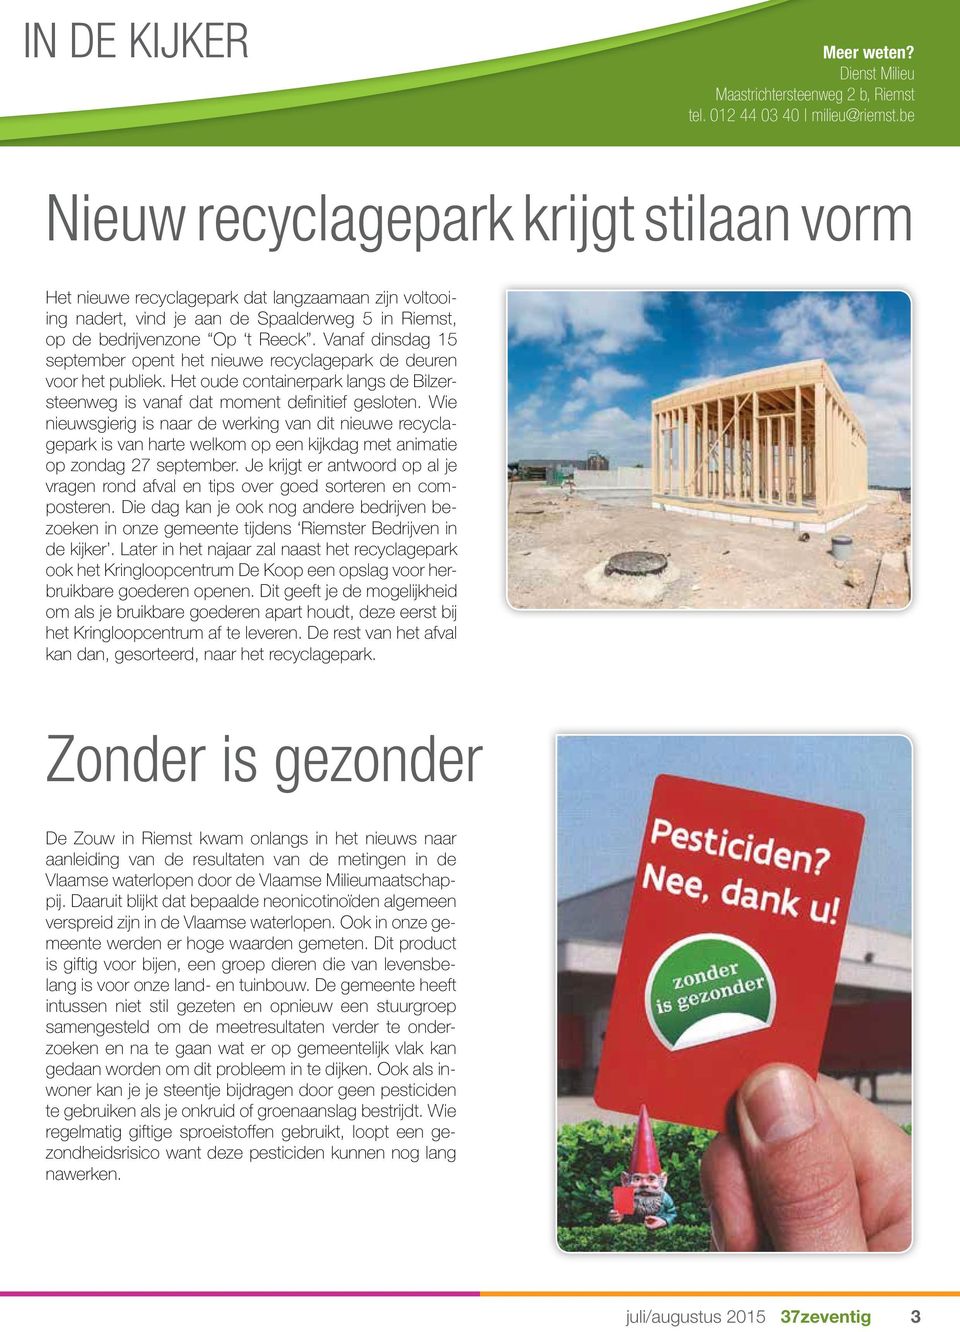 Vanaf dinsdag 15 september opent het nieuwe recyclagepark de deuren voor het publiek. Het oude containerpark langs de Bilzersteenweg is vanaf dat moment definitief gesloten.